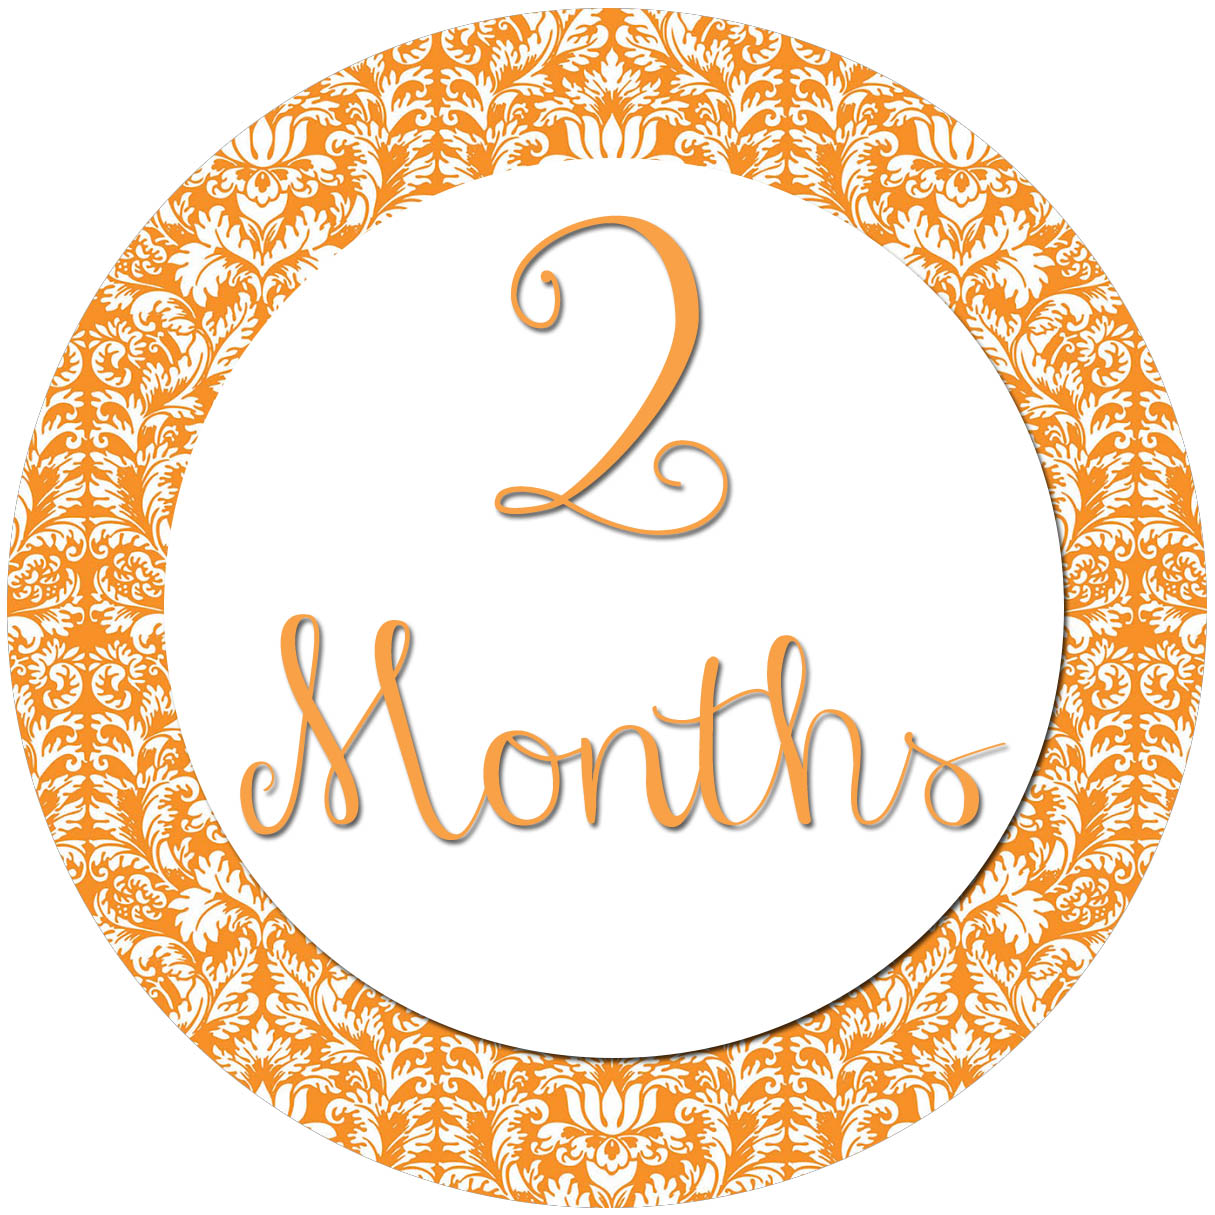 2 months old. Надпись два месяца. Надпись 2 month. Months надпись. Надпись 2 месяца на прозрачном фоне.